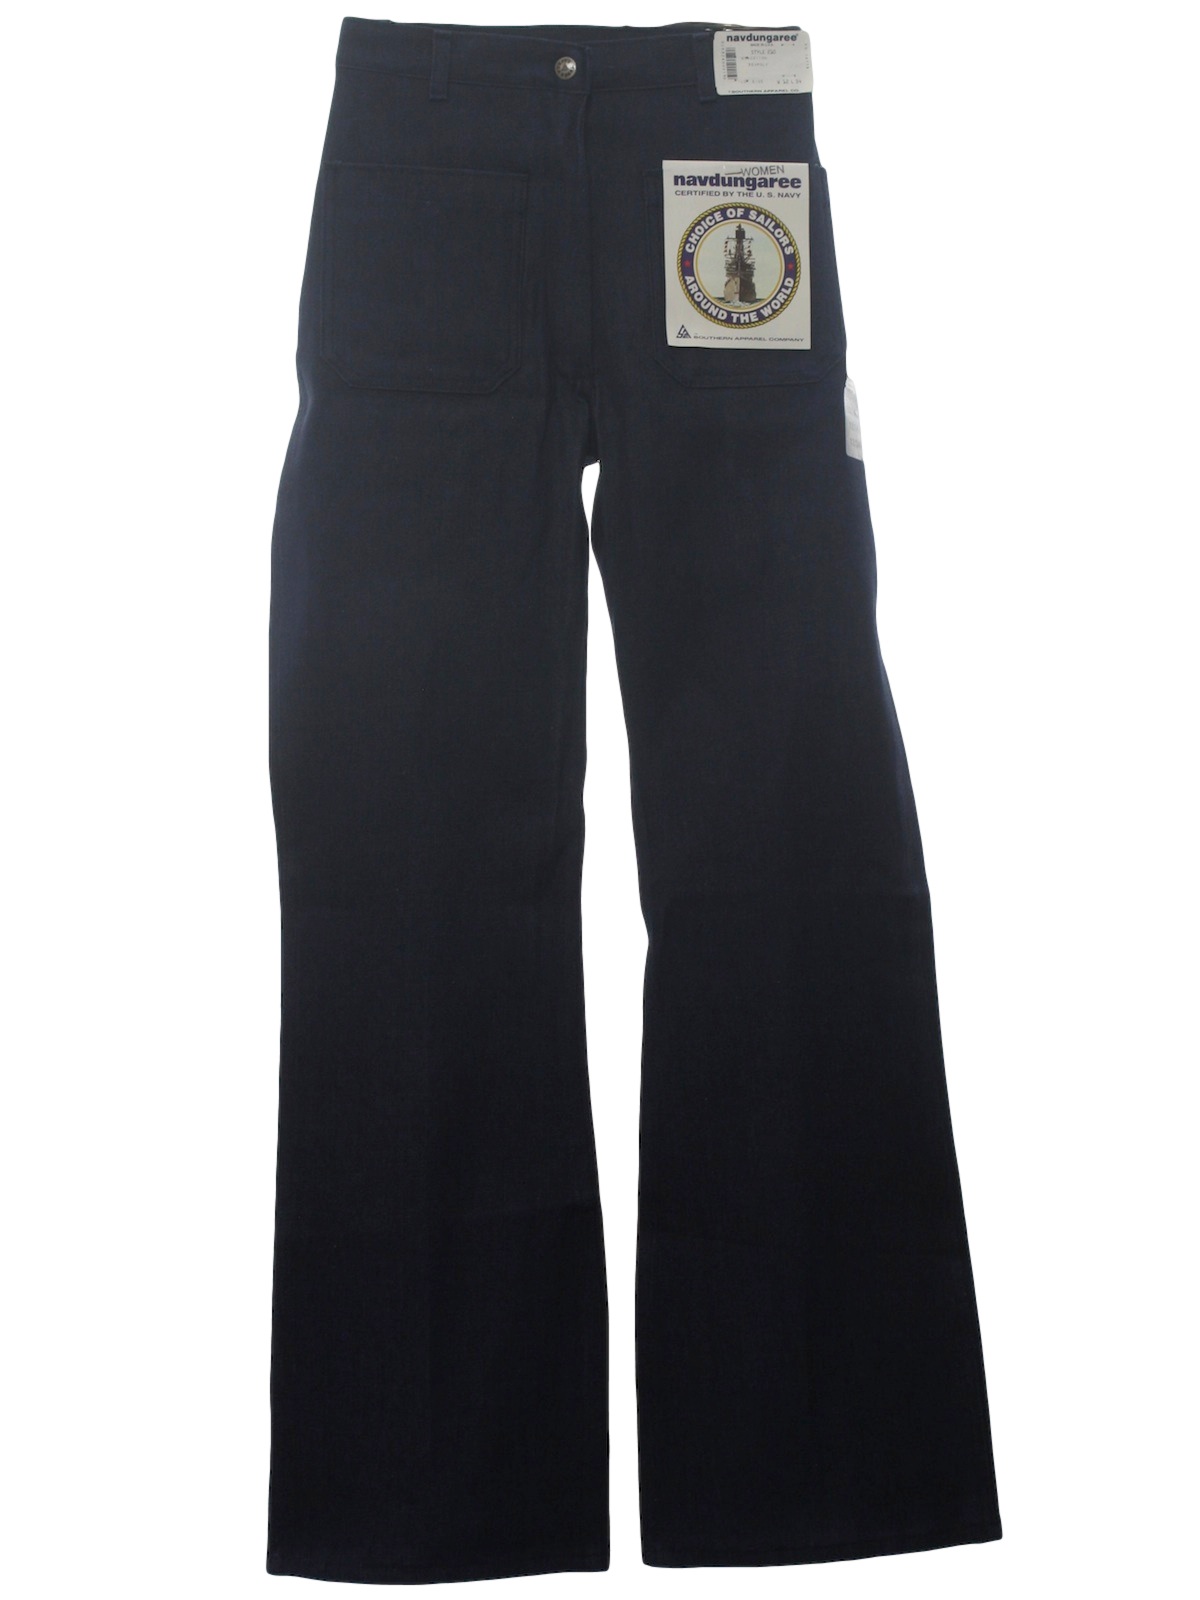 Seventies Vintage Bellbottom Pants: 70s style -Navdungaree- Womens dark ...